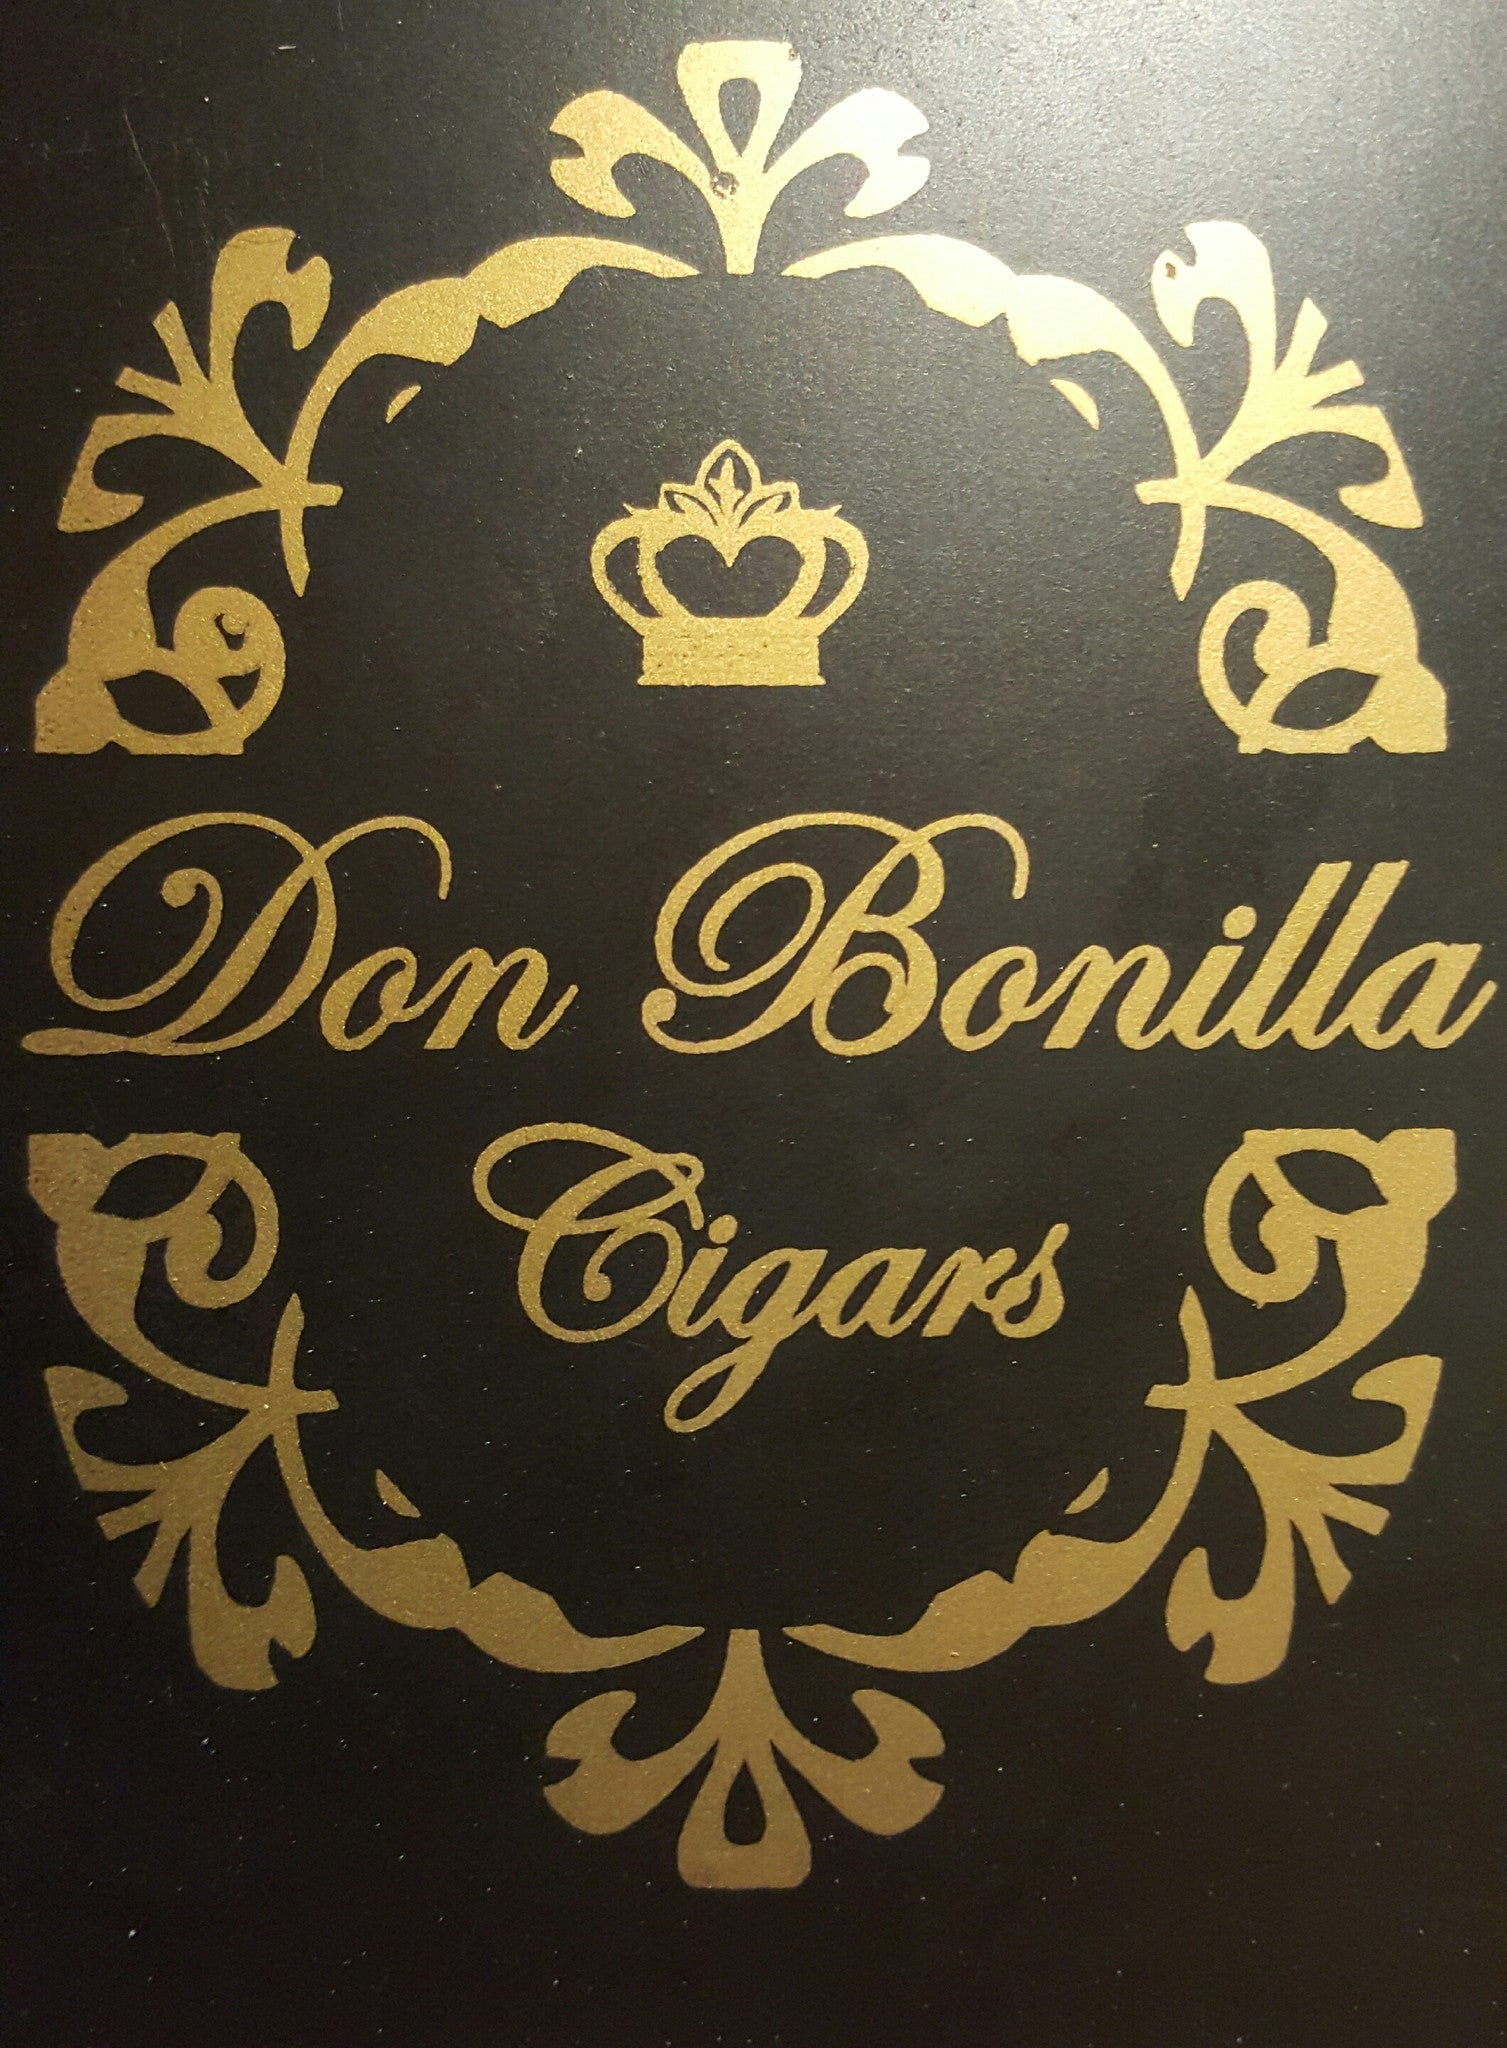 Don Bonilla Cigars